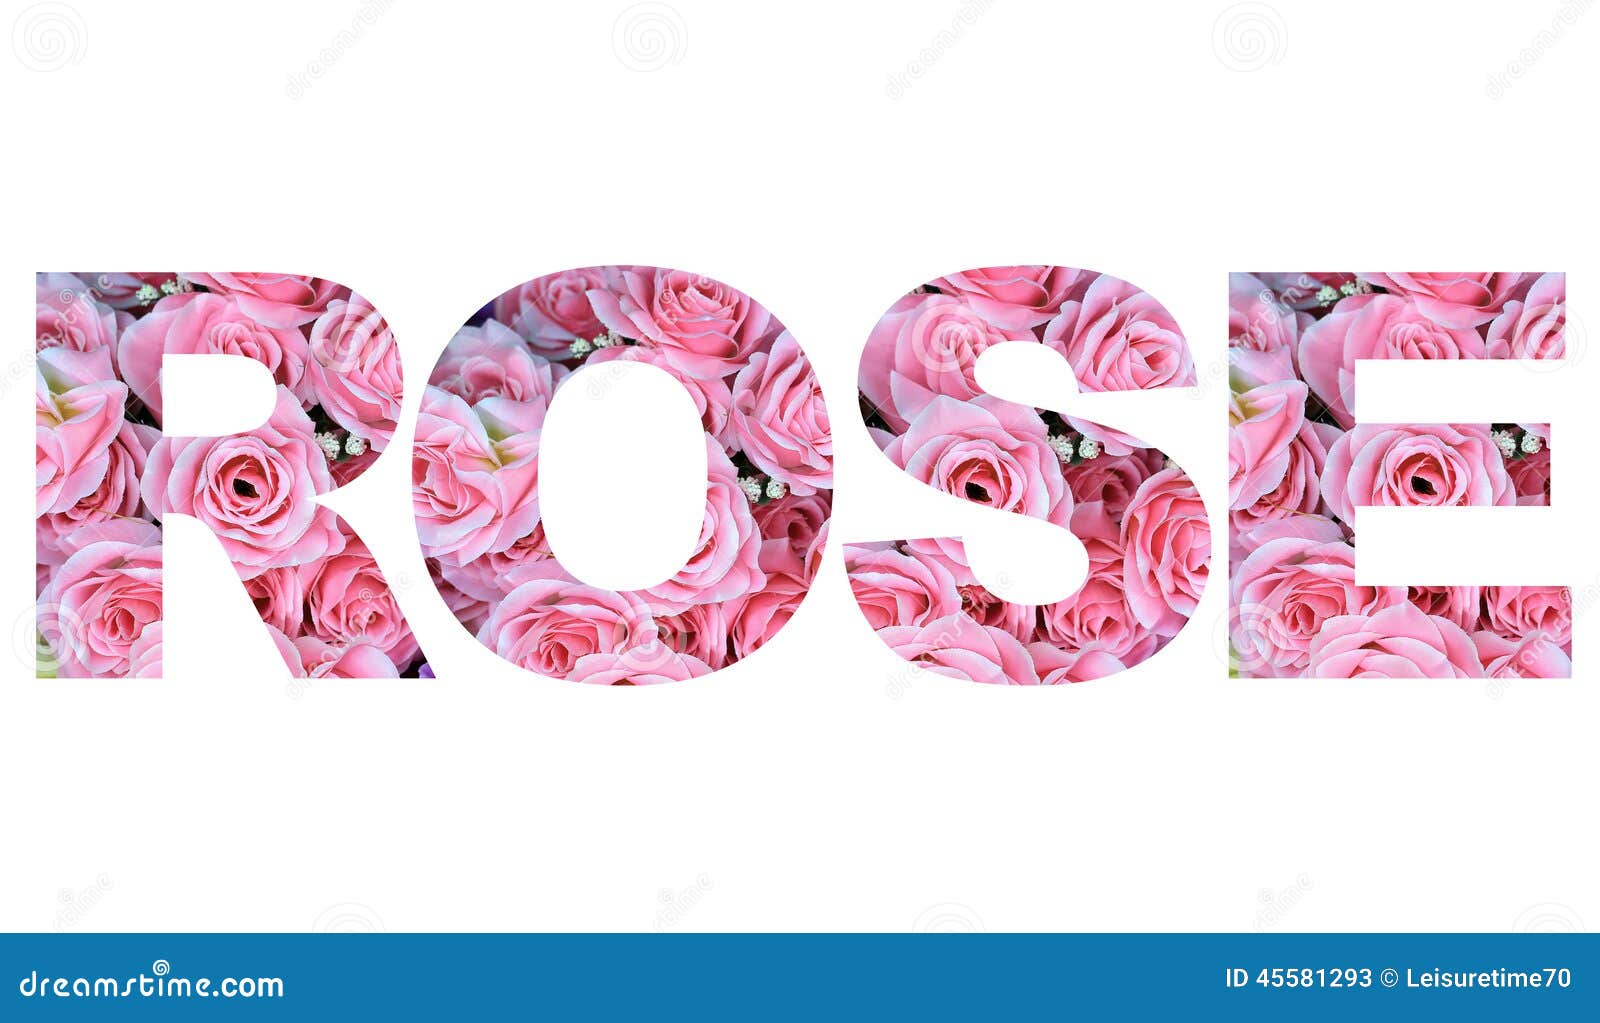 Как пишется слово розовый. Слово Rose. Rose надпись.